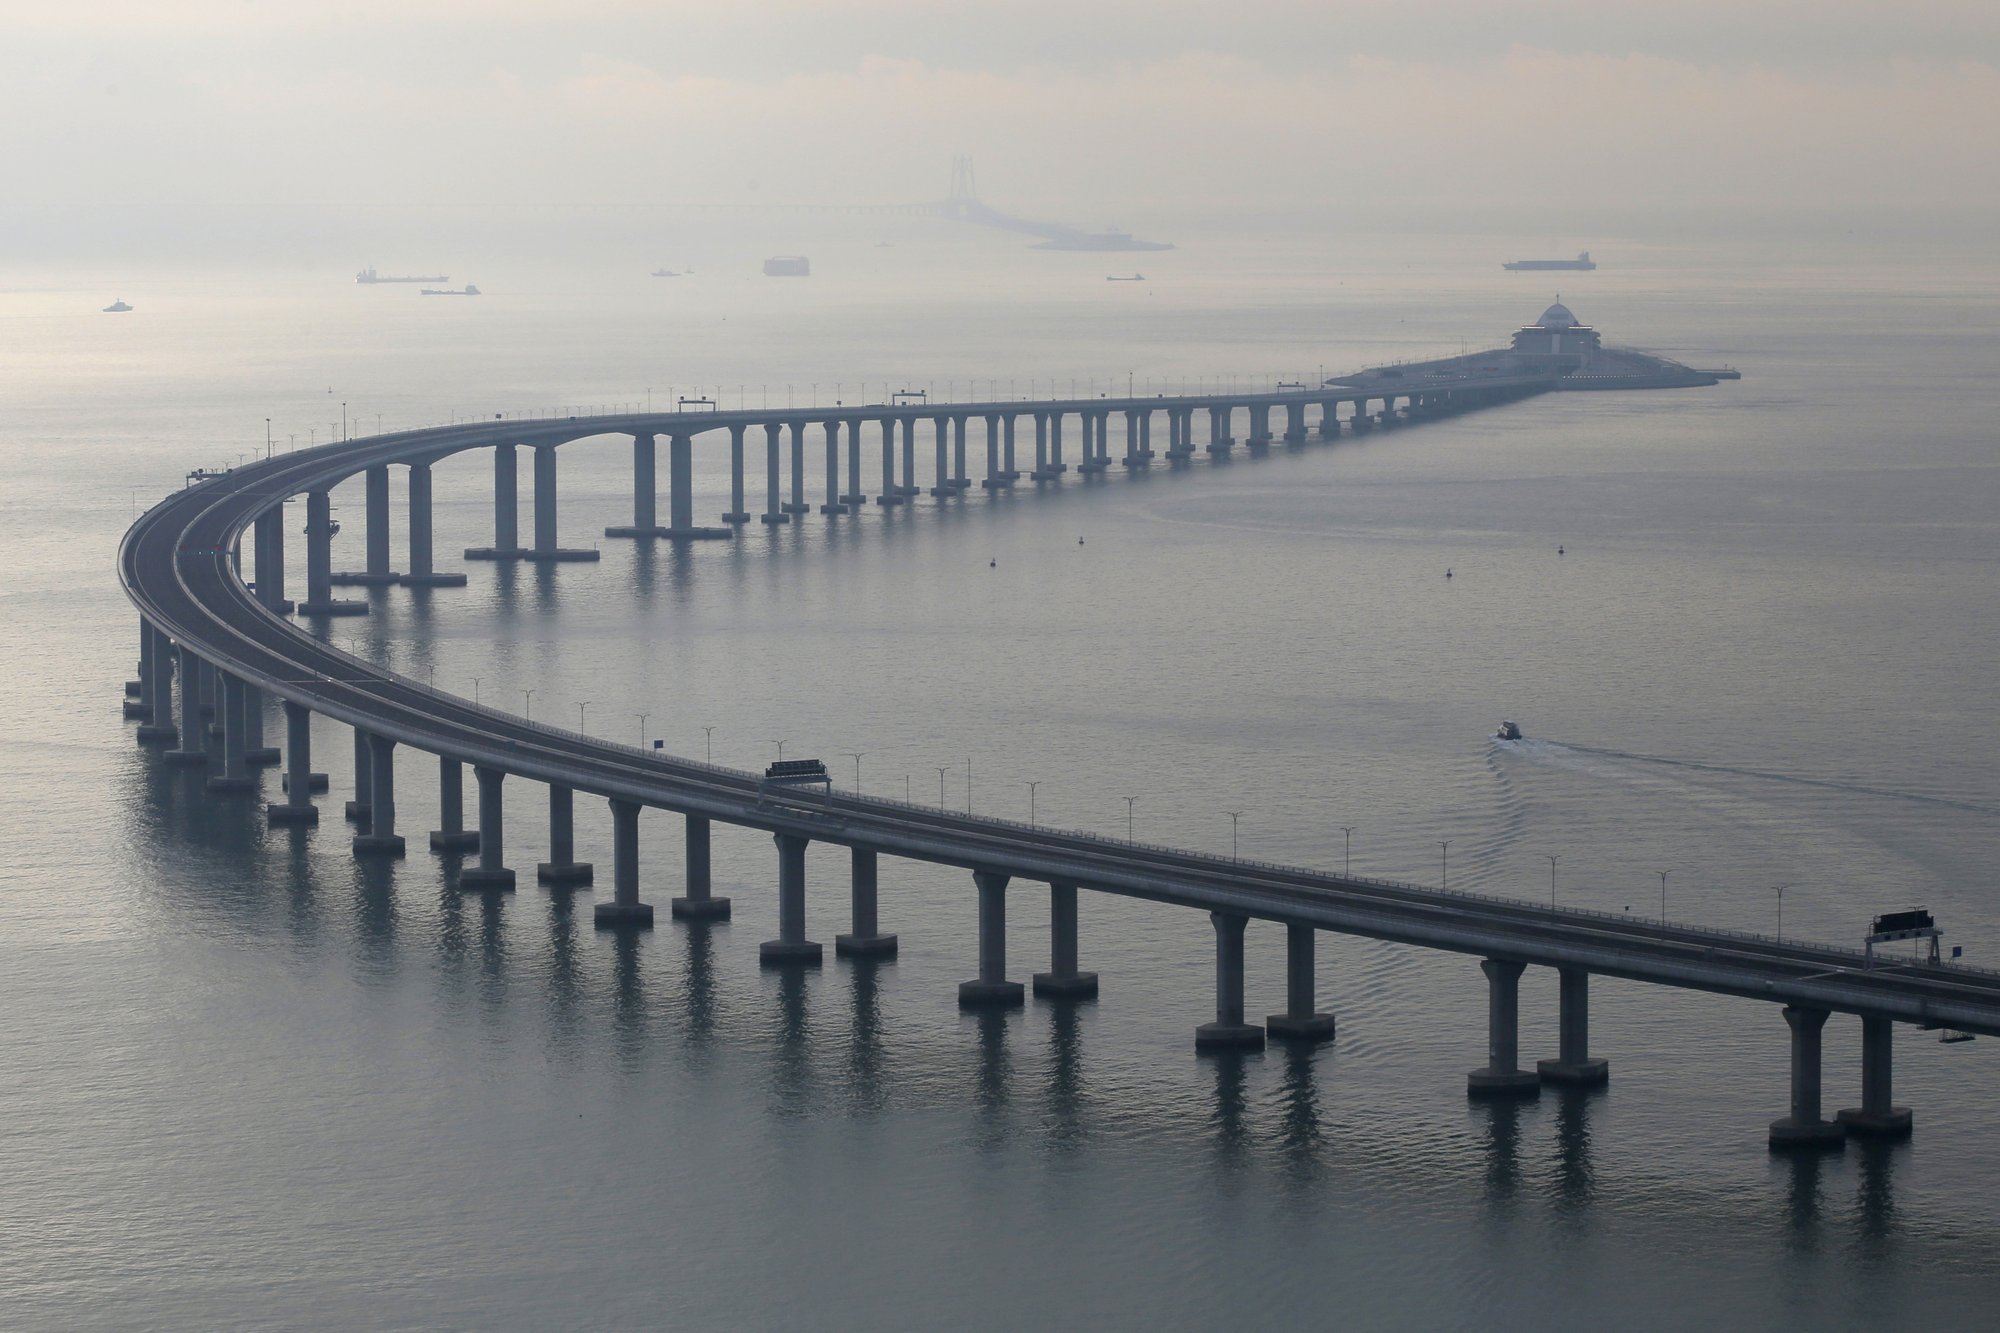 Átadták a világ leghosszabb tengeri hídját